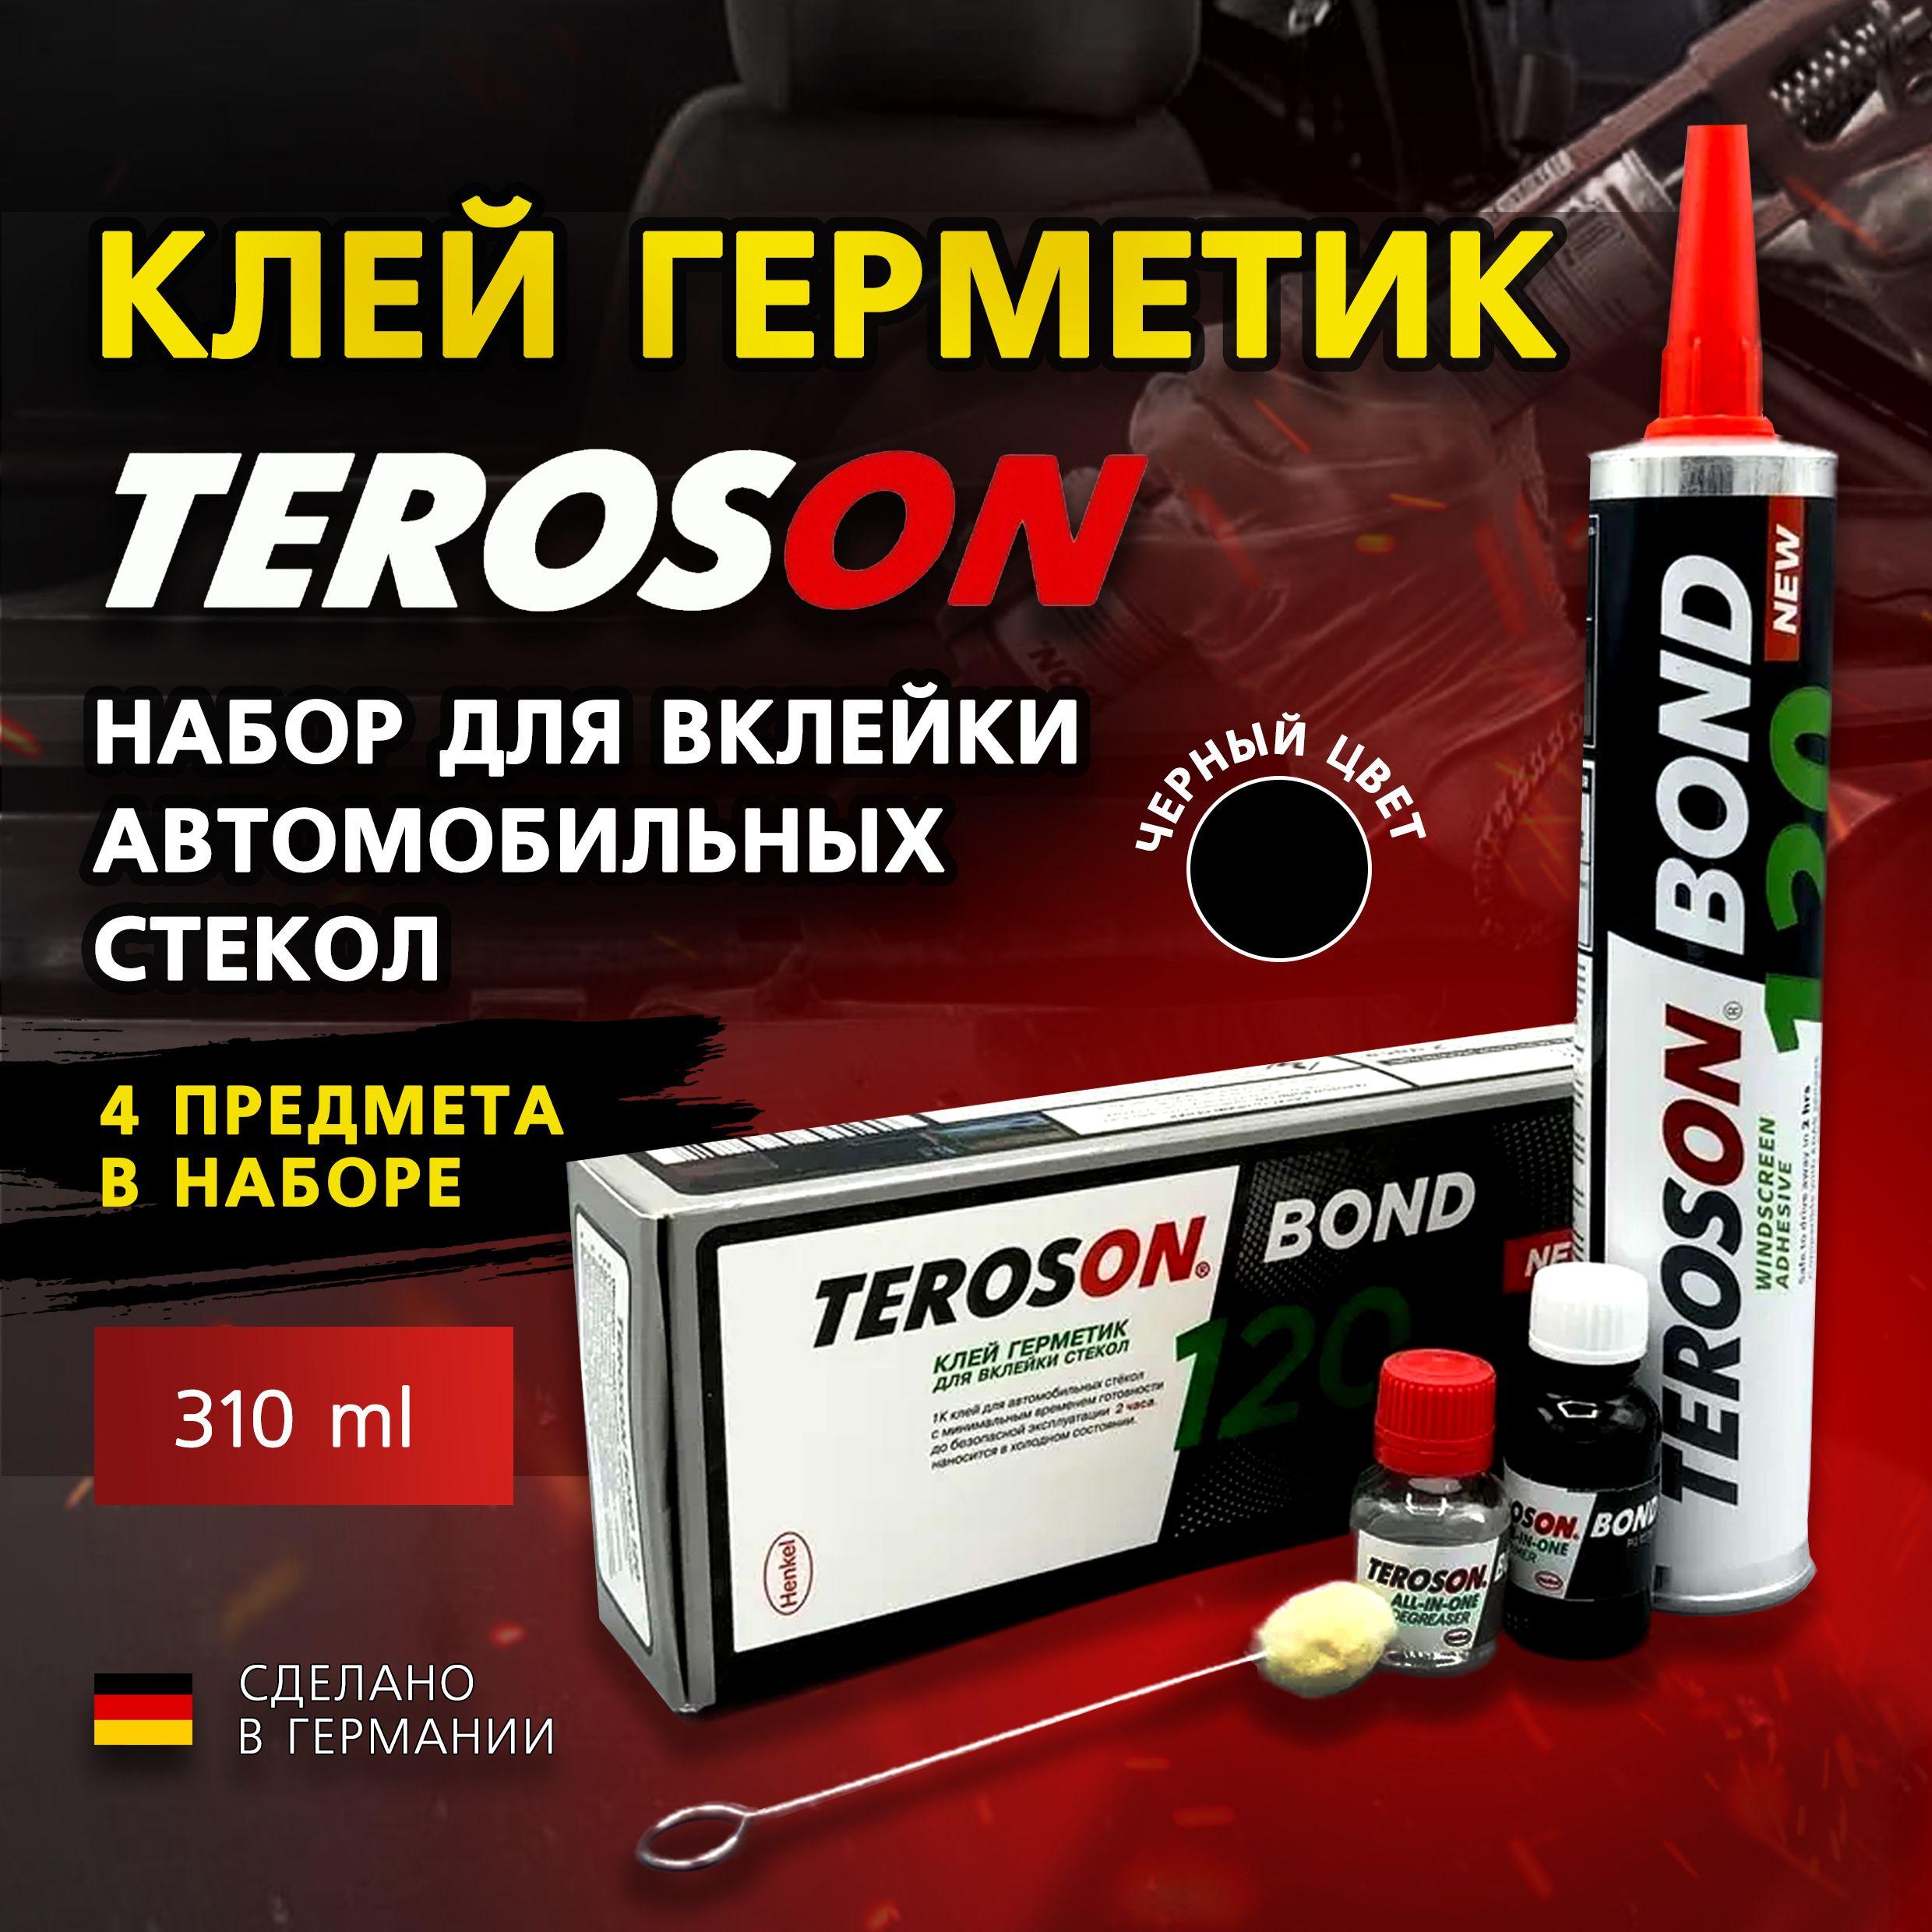 Teroson | Набор для вклейки автомобильных стекол Teroson Bond 120, 4 предмета, клей стекольный